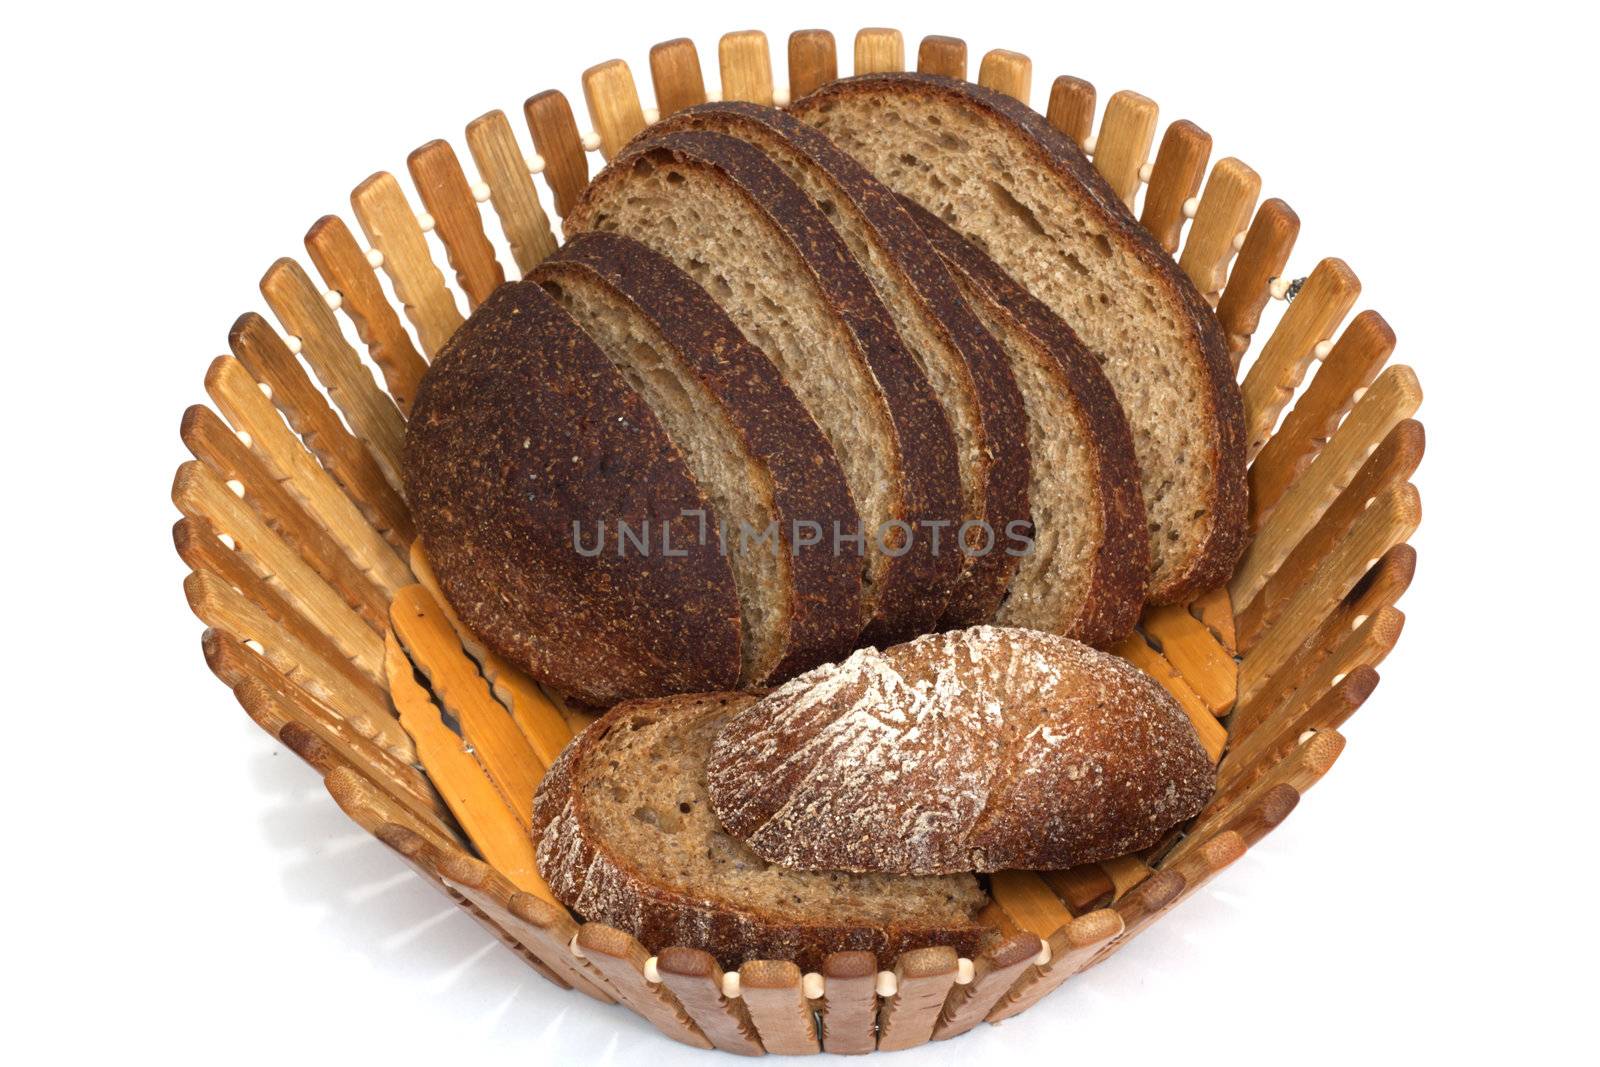 Black bread on board on white background  by schankz